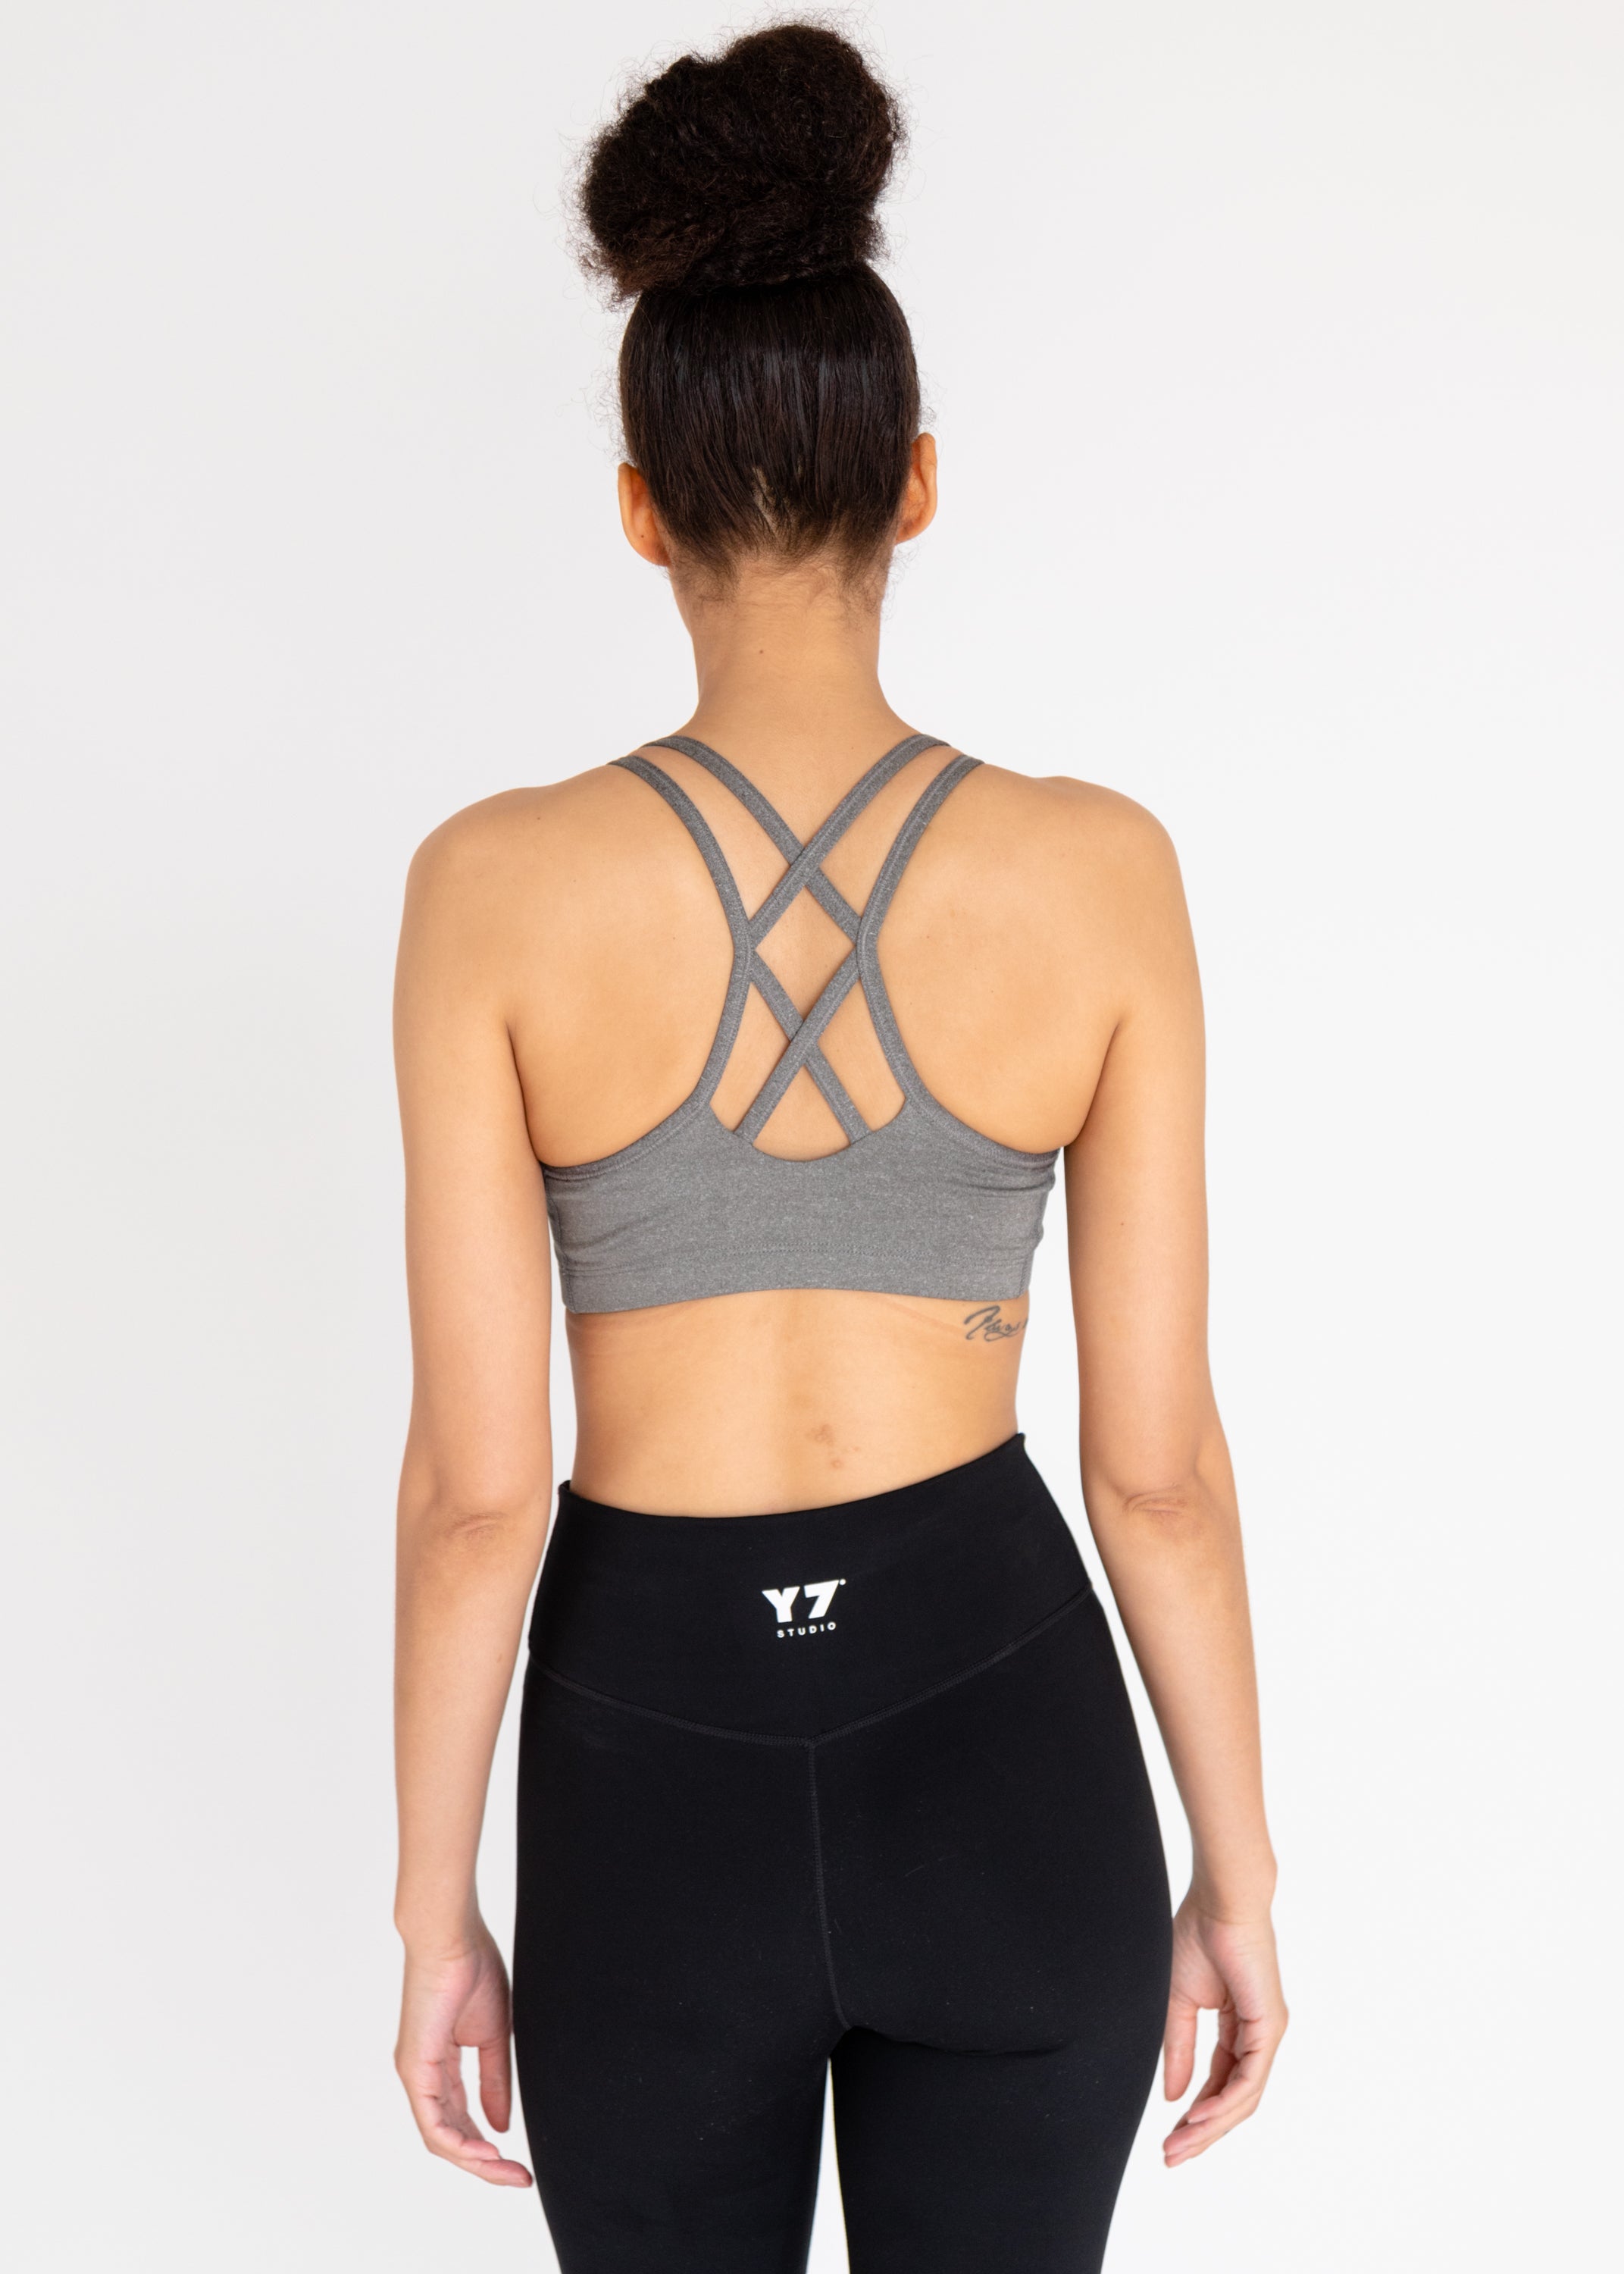 Y7 x Nike Strappy Bra – Y7 Studio